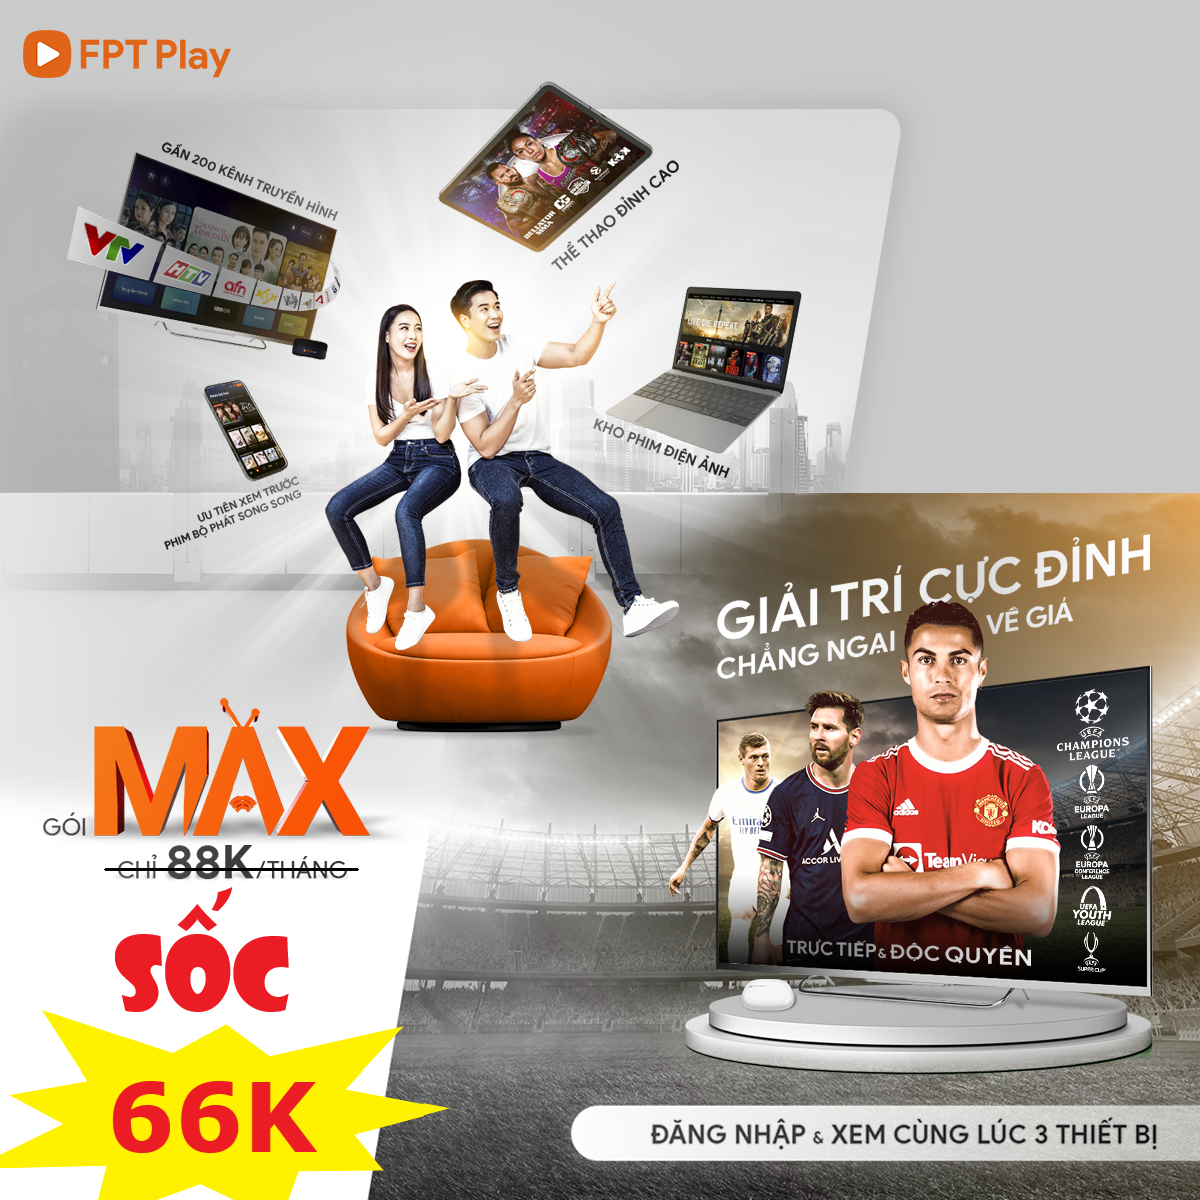 Gói Max FPT Play dịch vụ xem truyền hình chỉ với 88.000đ/tháng 10